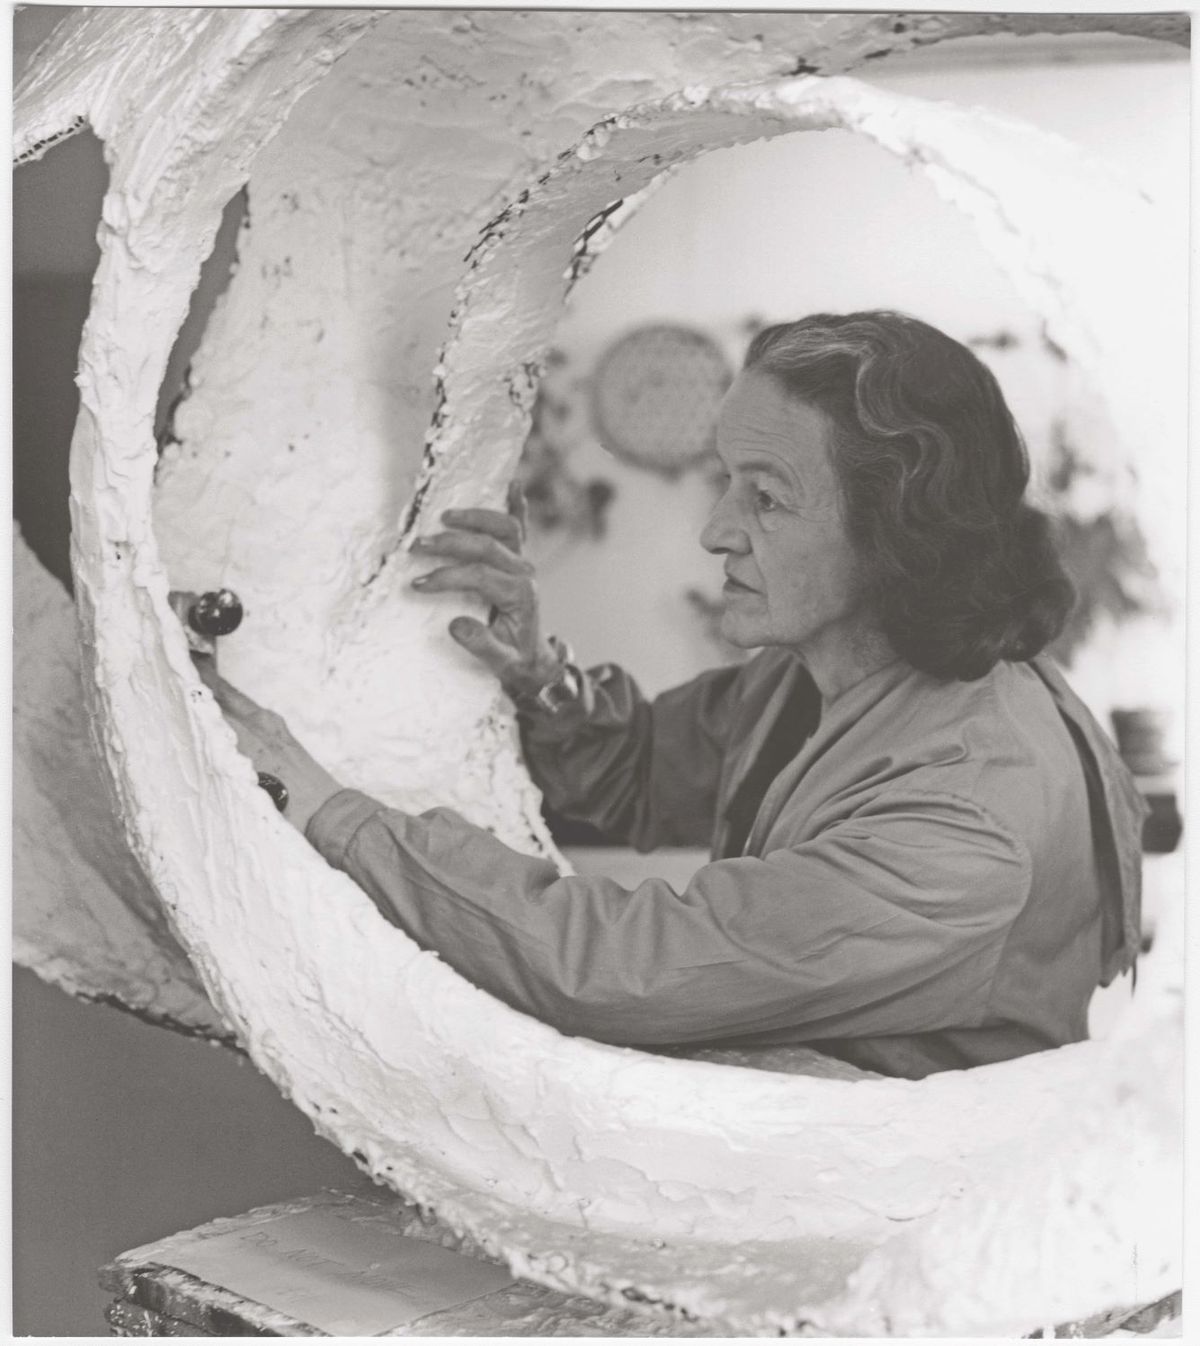 Barbara Hepworth travaillant sur le prototype de Oval Form (Trezion) au Palais de Danse, St Ives, 1963. Barbara Hepworth © Bowness. Photo : Val Wilmer